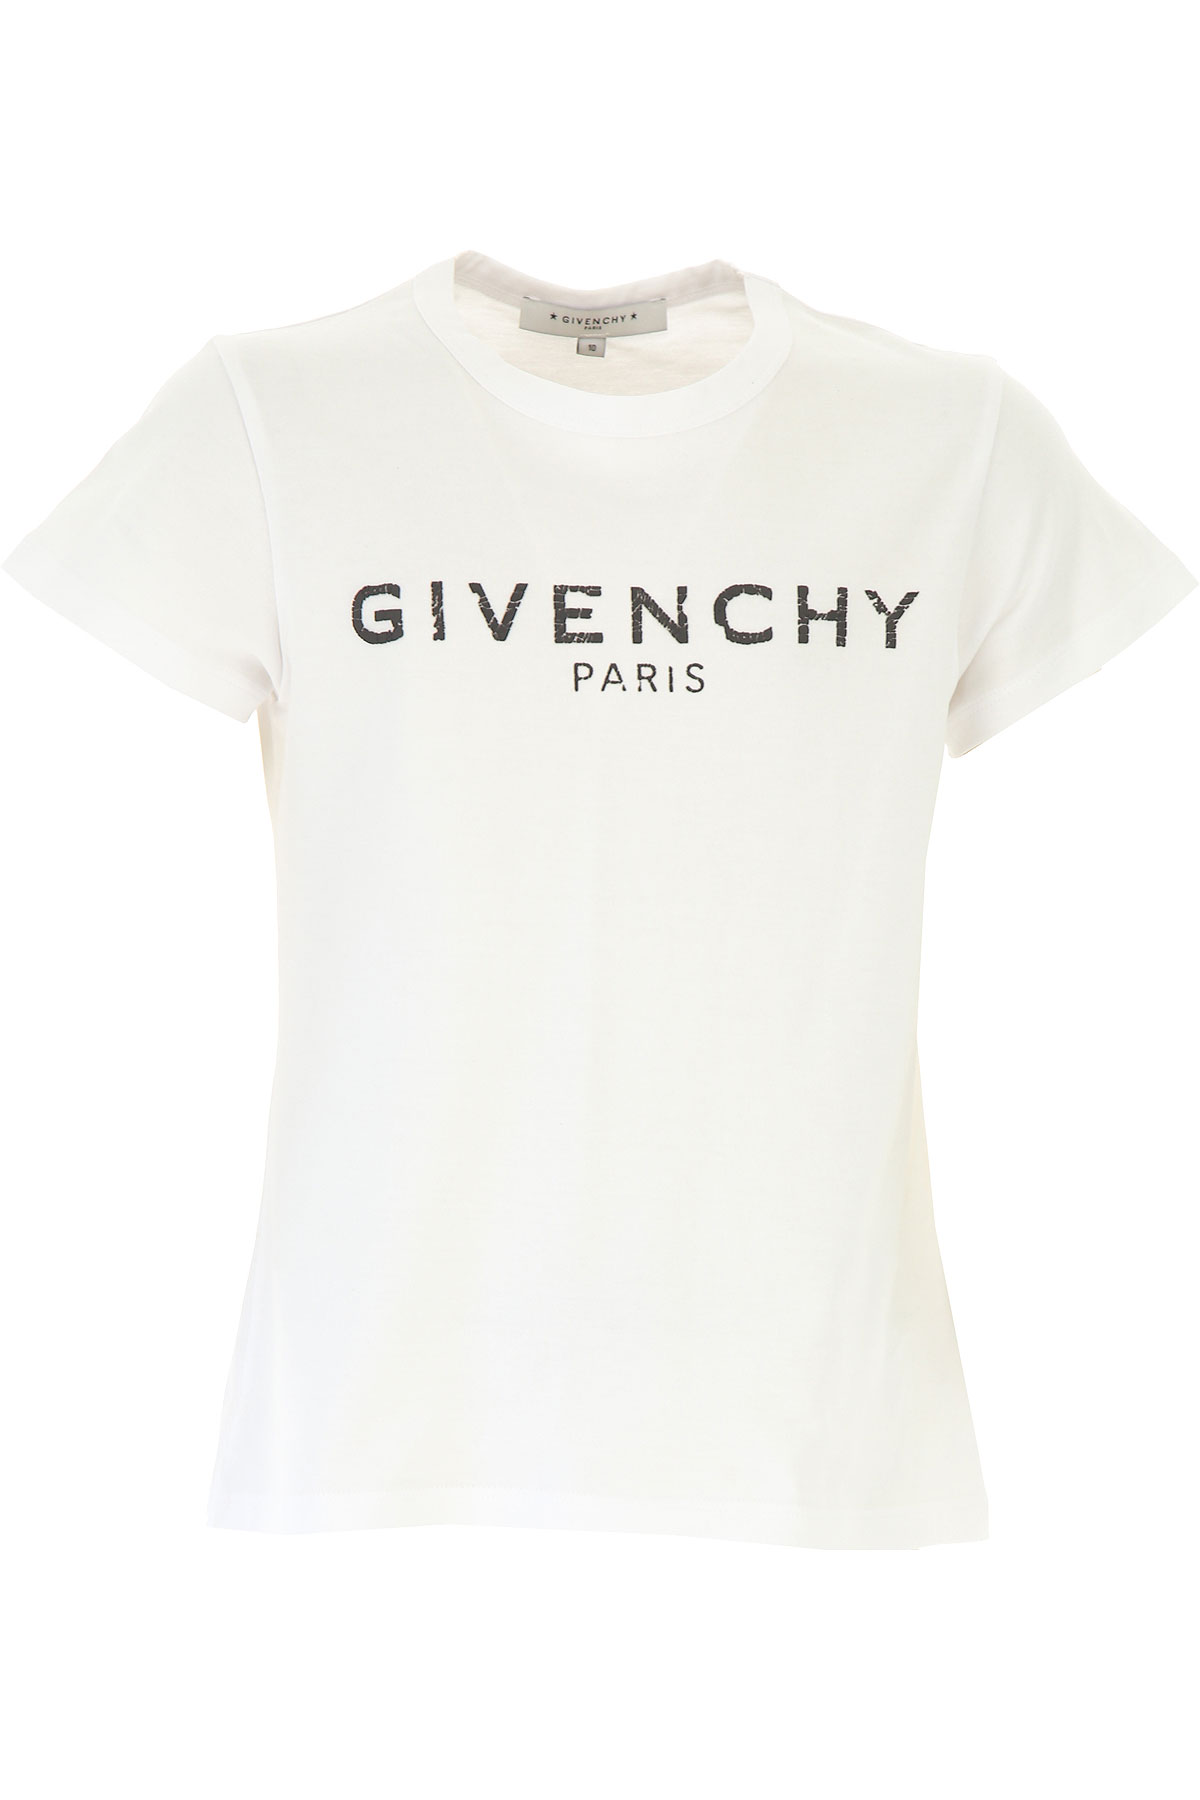 Givenchy Kinder T-Shirt für Mädchen Günstig im Sale, Weiss, Baumwolle, 2017, 10Y 12Y 4Y 5Y 6Y 8Y